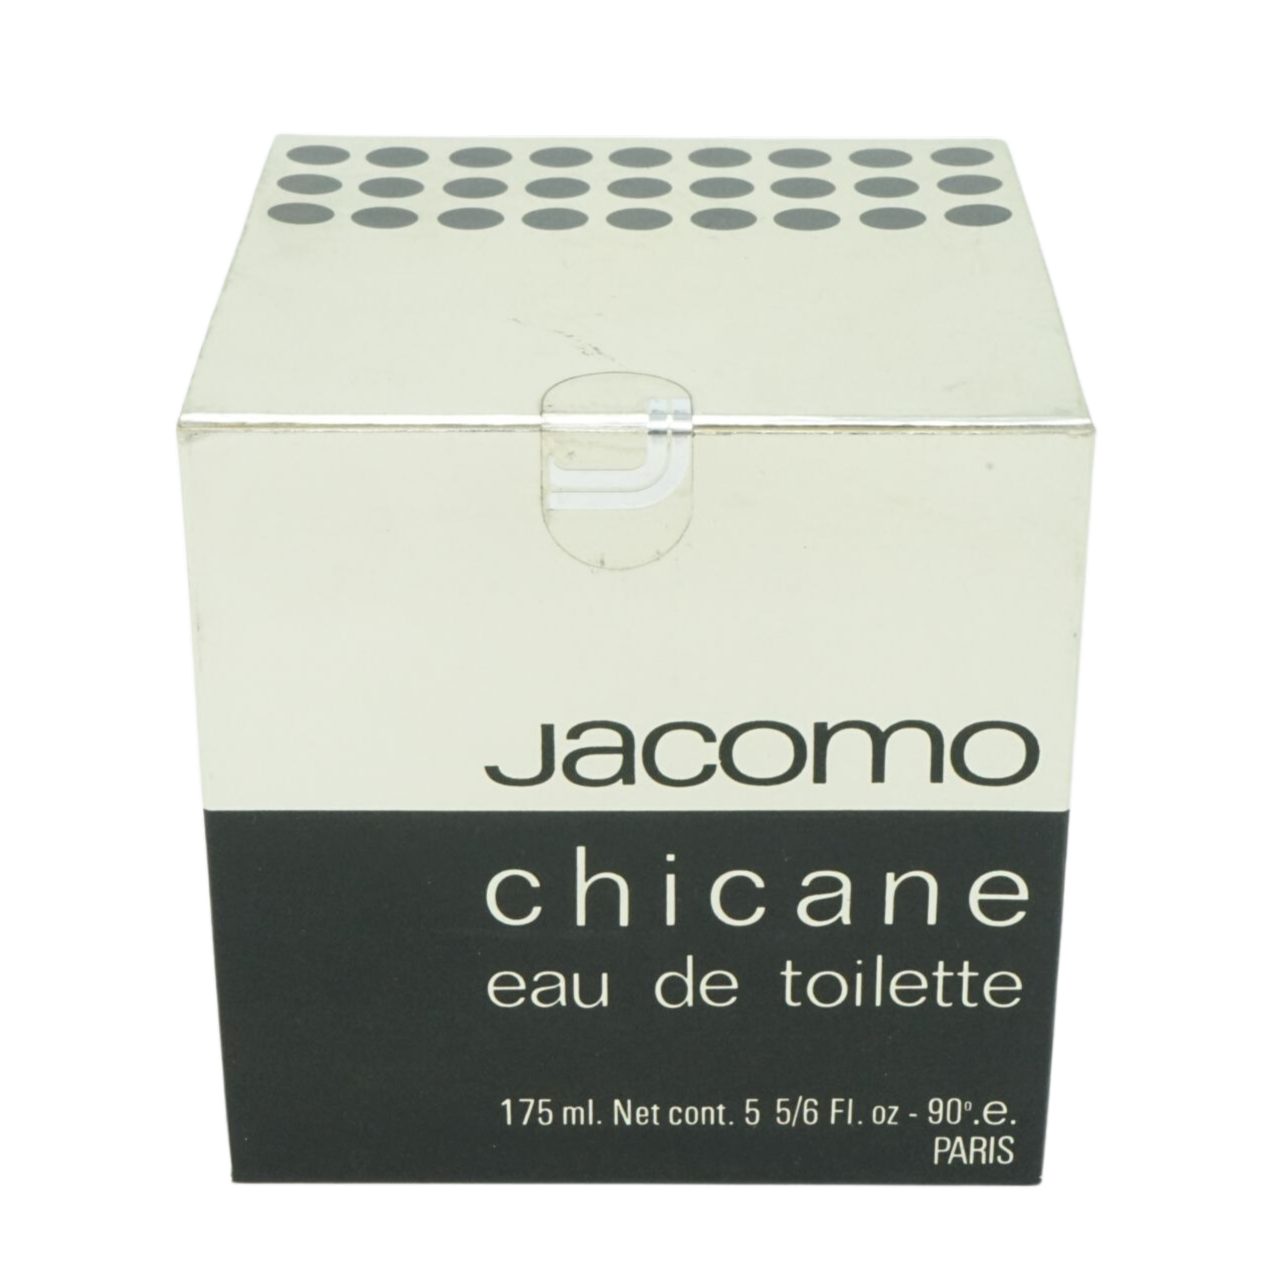 Jacomo Toilette Eau Toilette Jacomo de de 175ml Chicane Eau